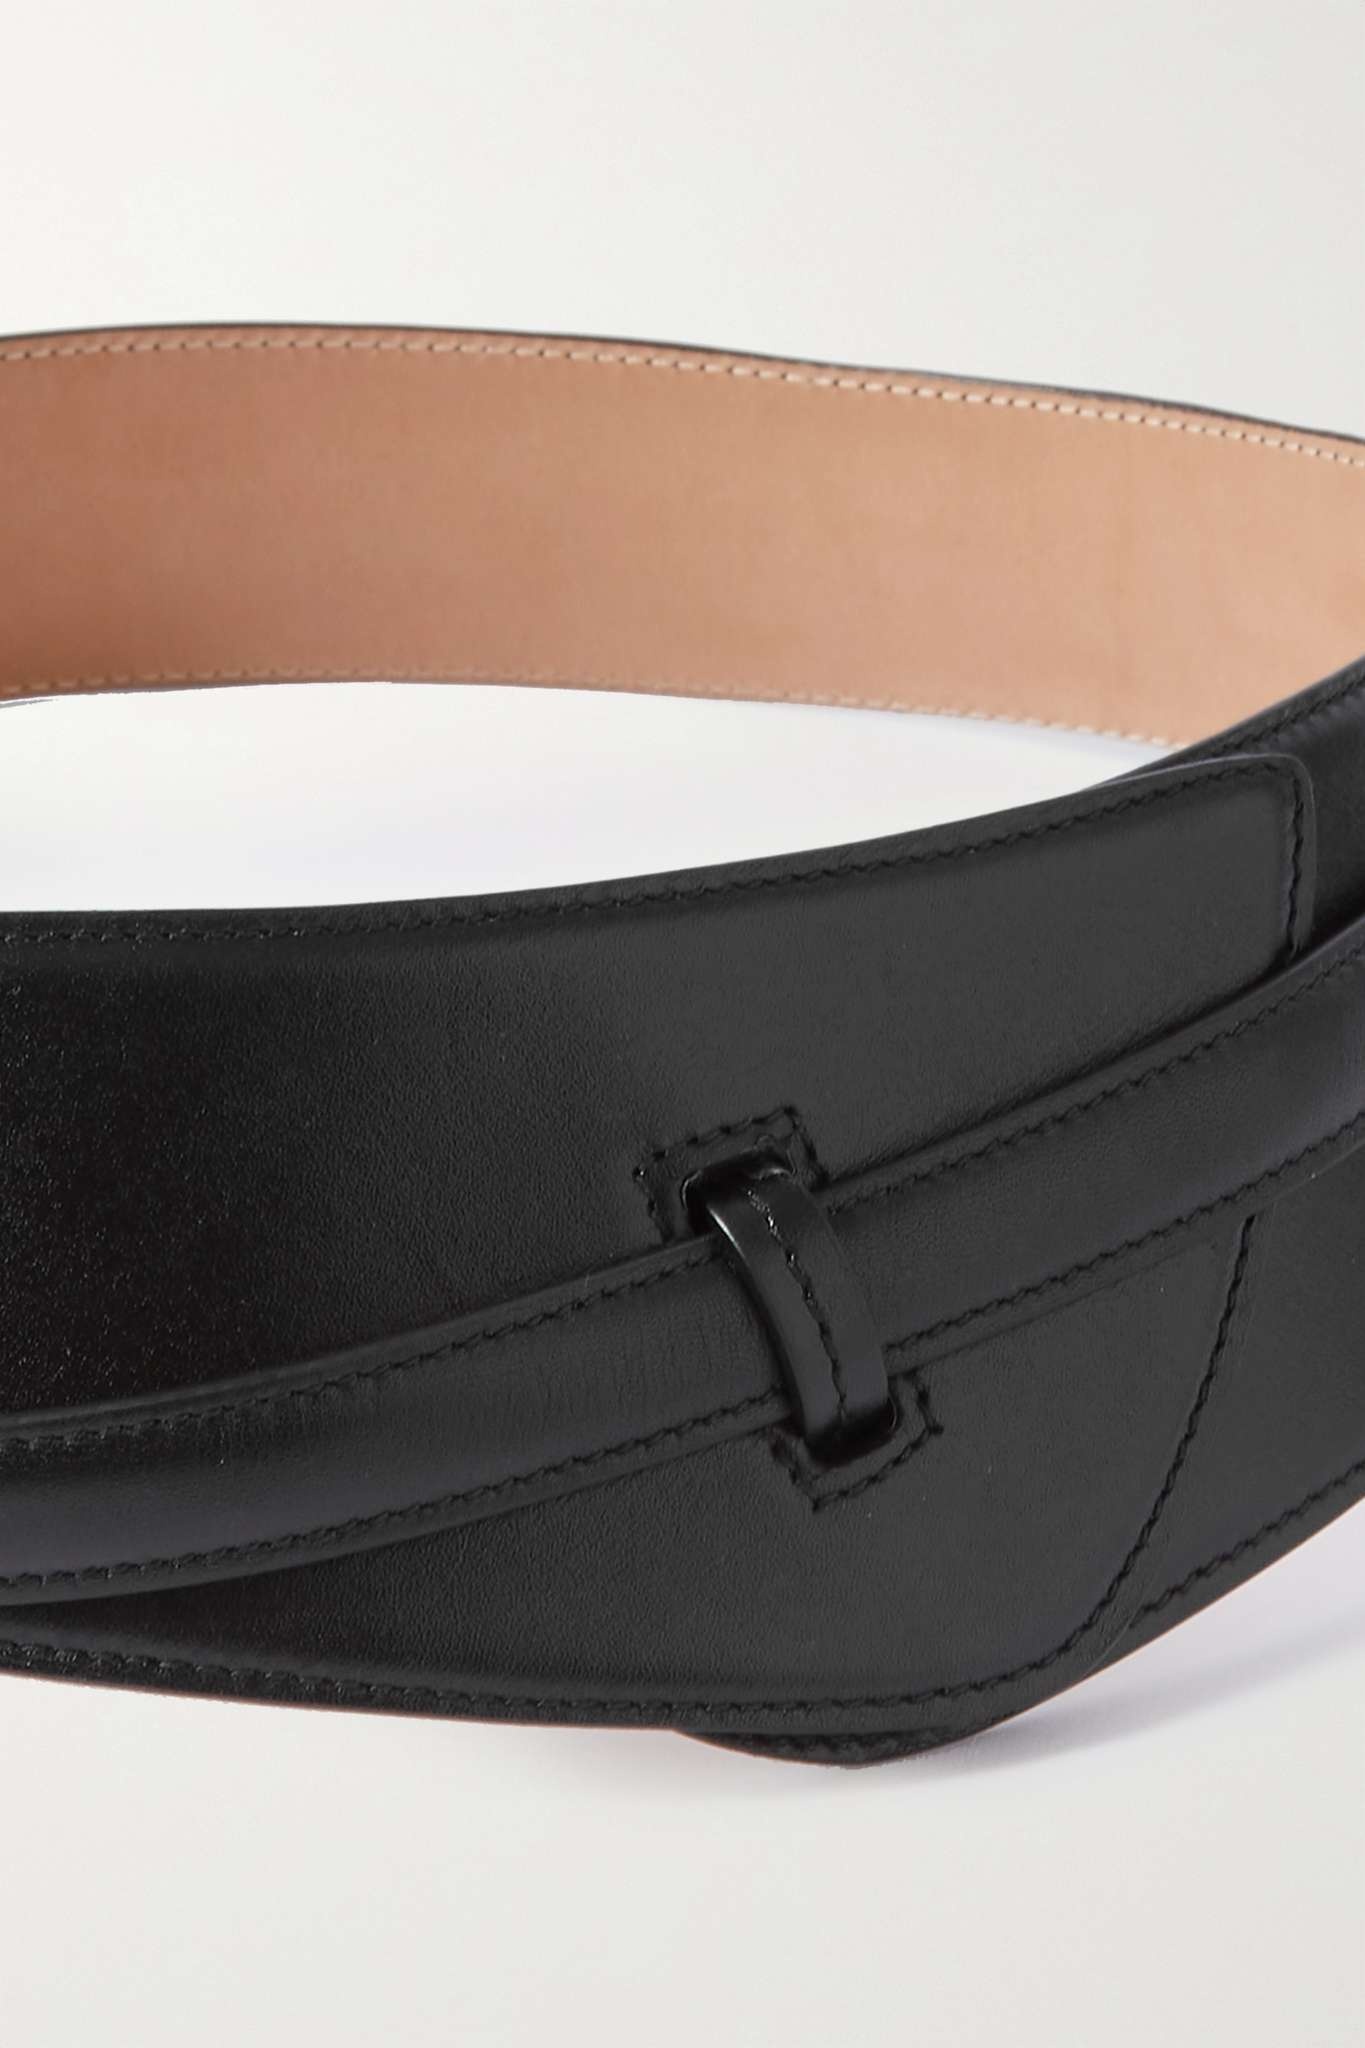 Paneled leather belt - 5